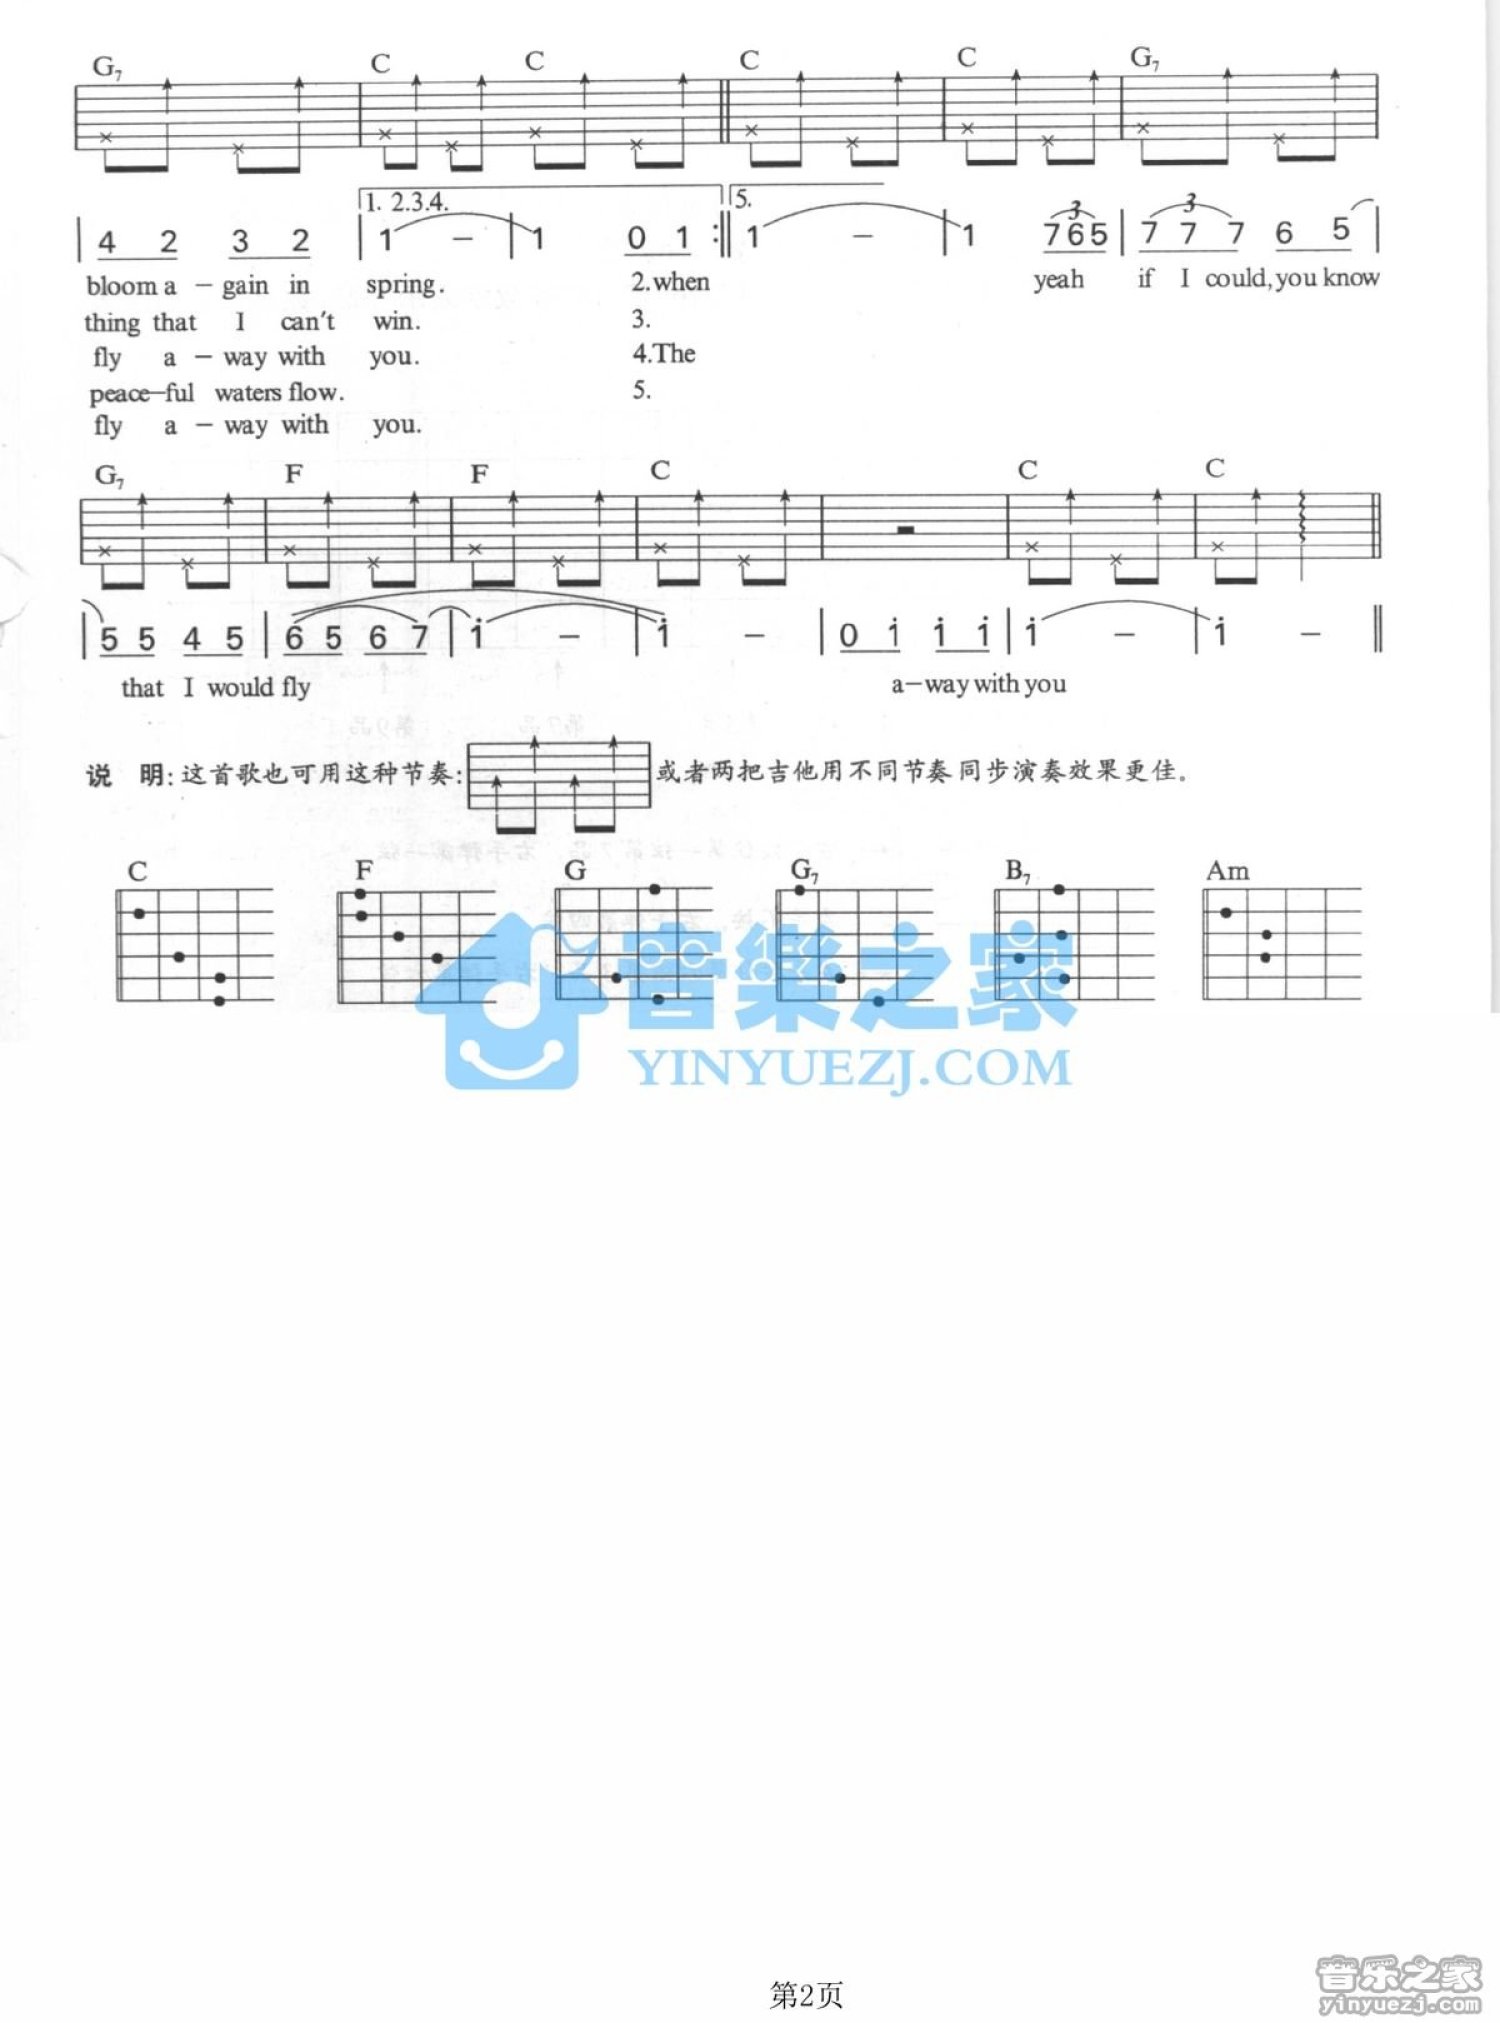 Songbird Sheet Music Pdf - Epic Sheet Music